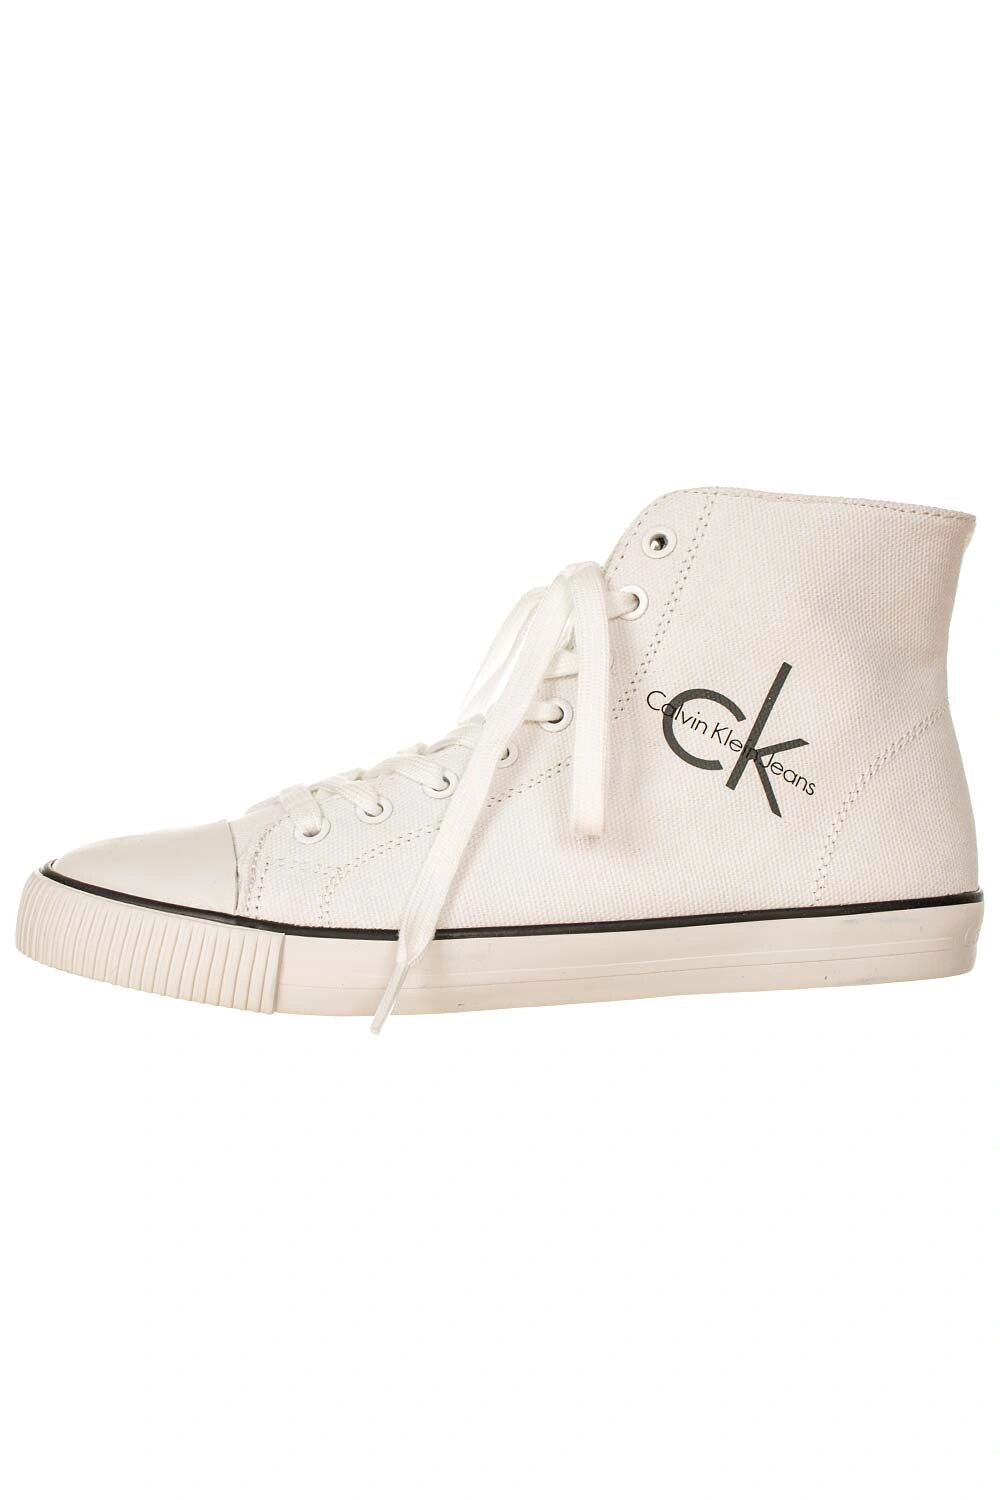 Calvin Klein kotníkové boty bílé Velikost: EU 39